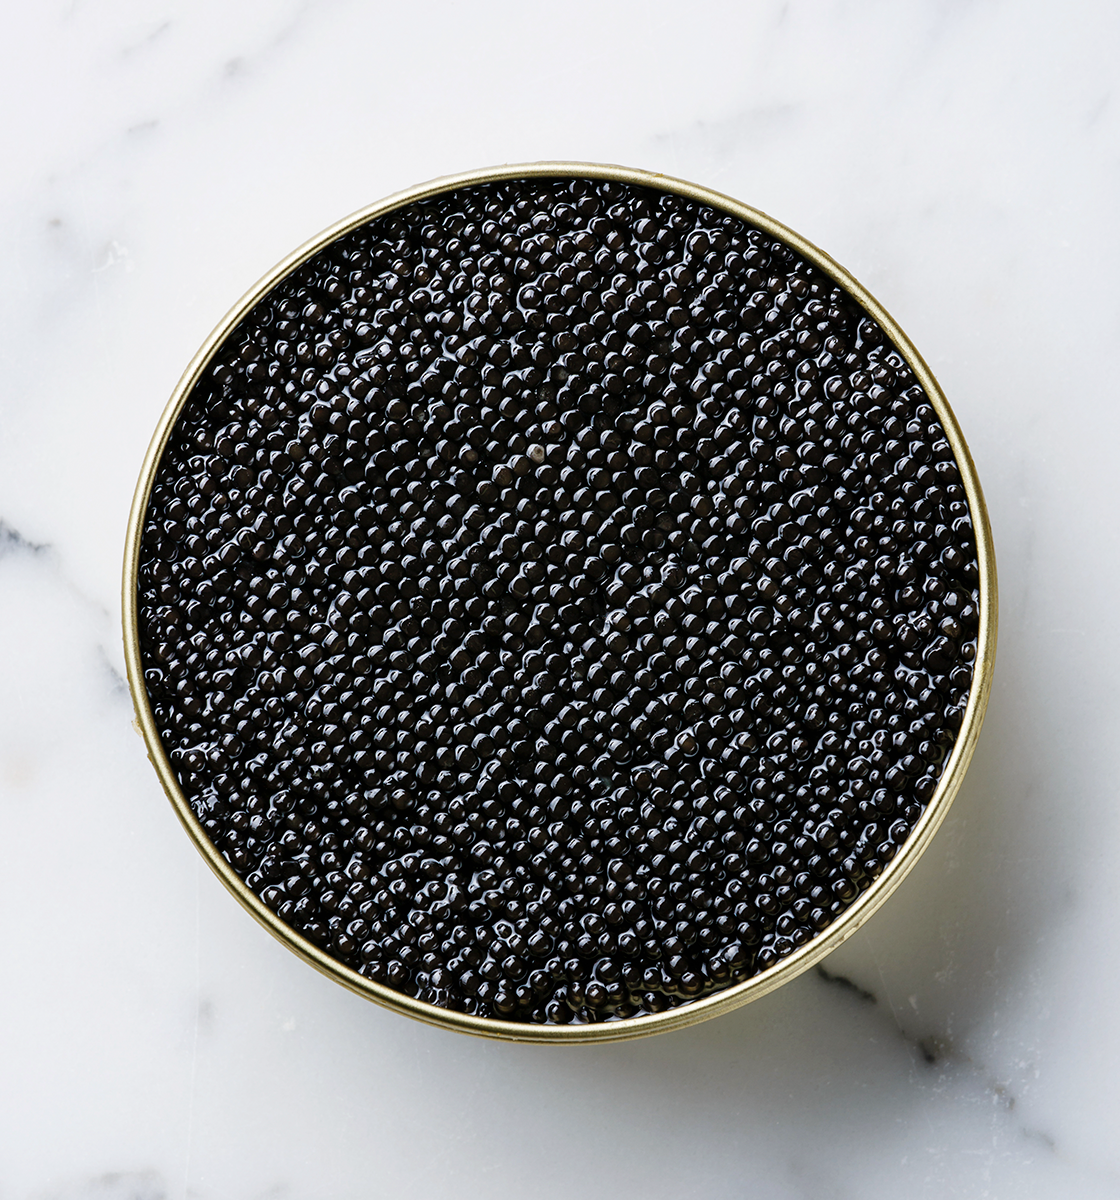 Caviar Osciètre Signature France 500g